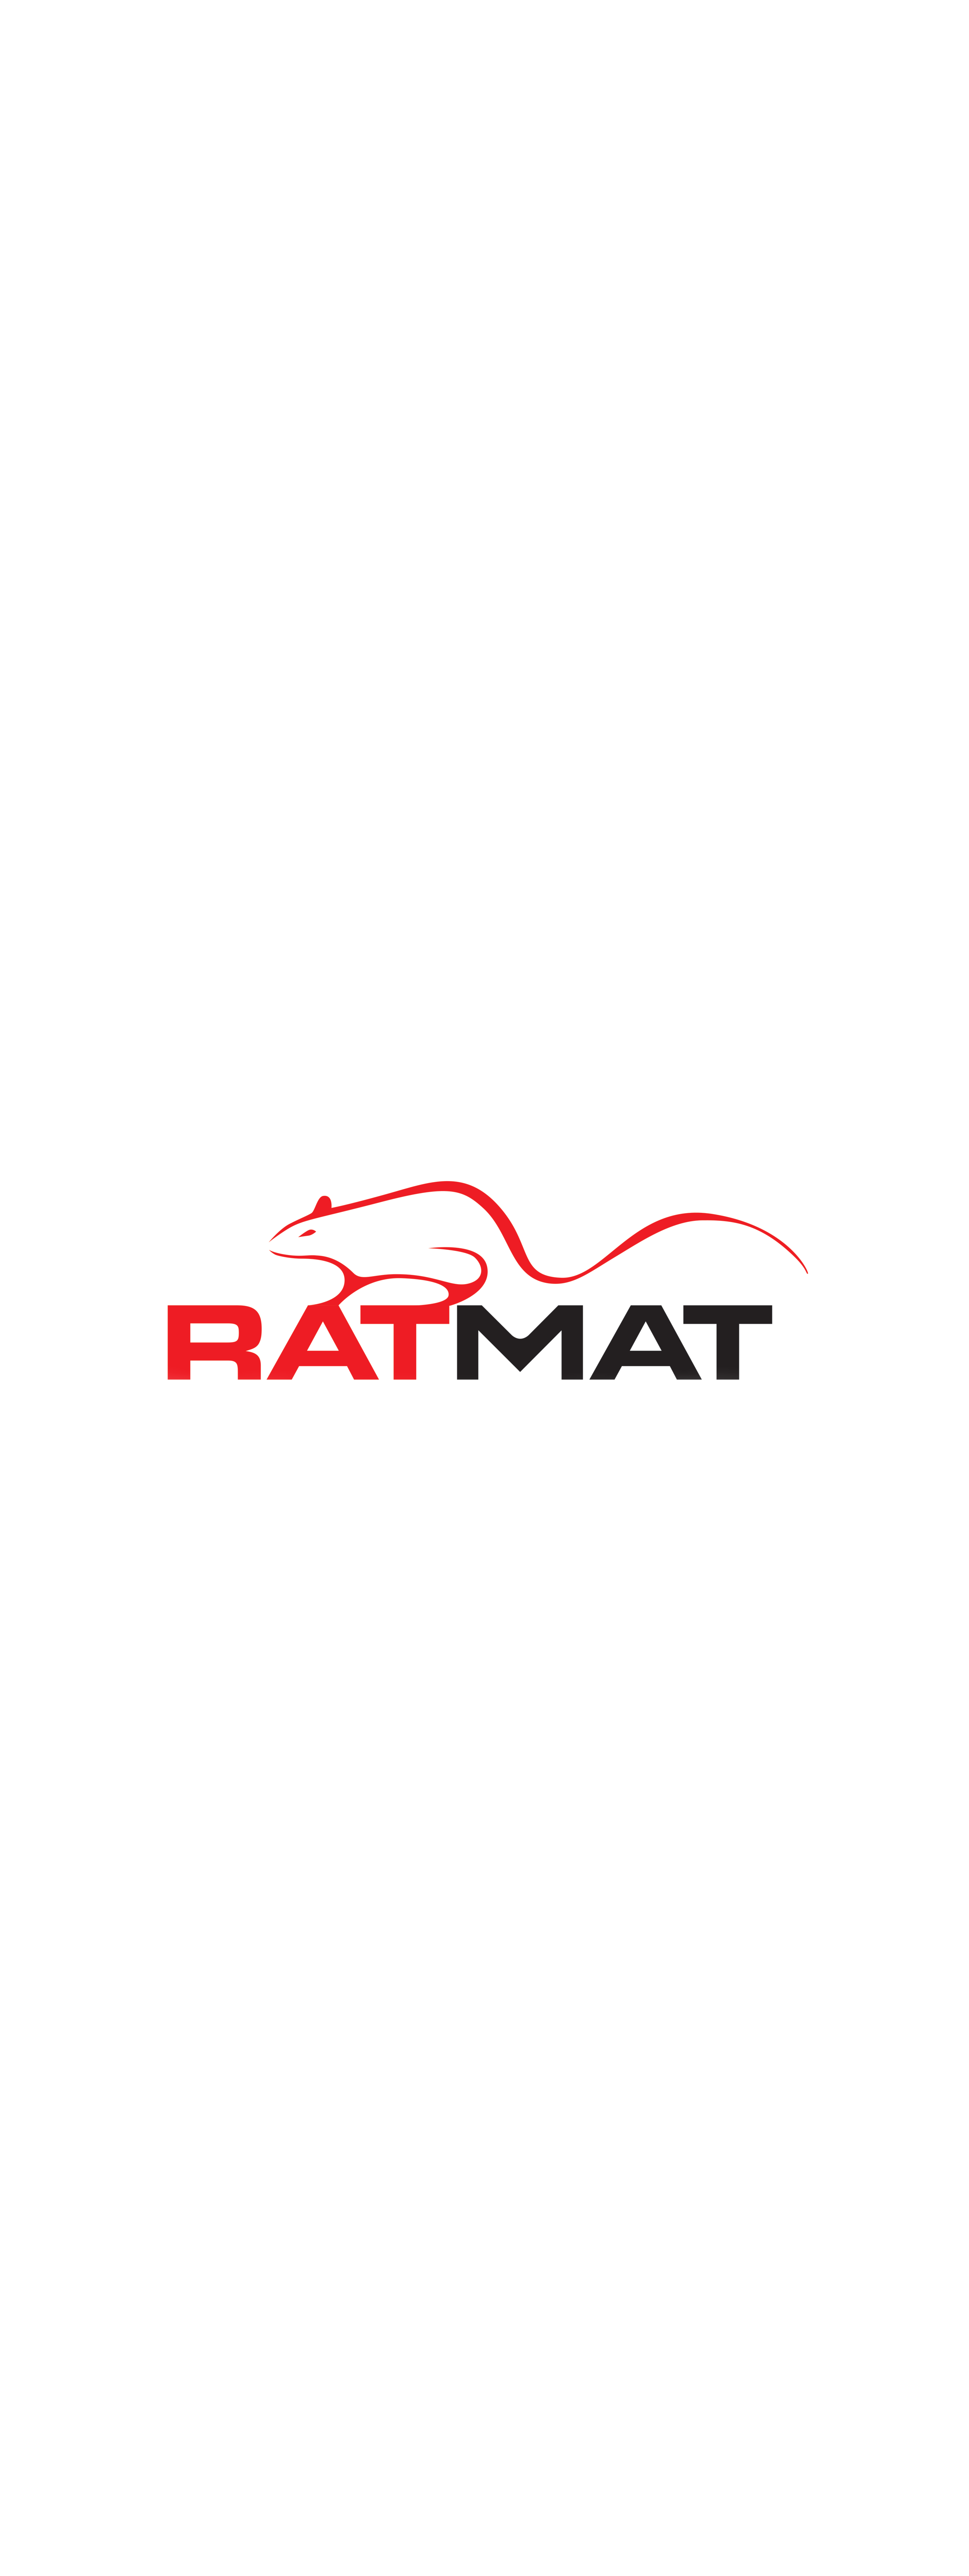 RatMat 2 (1) (edited-Pixlr) (1).png